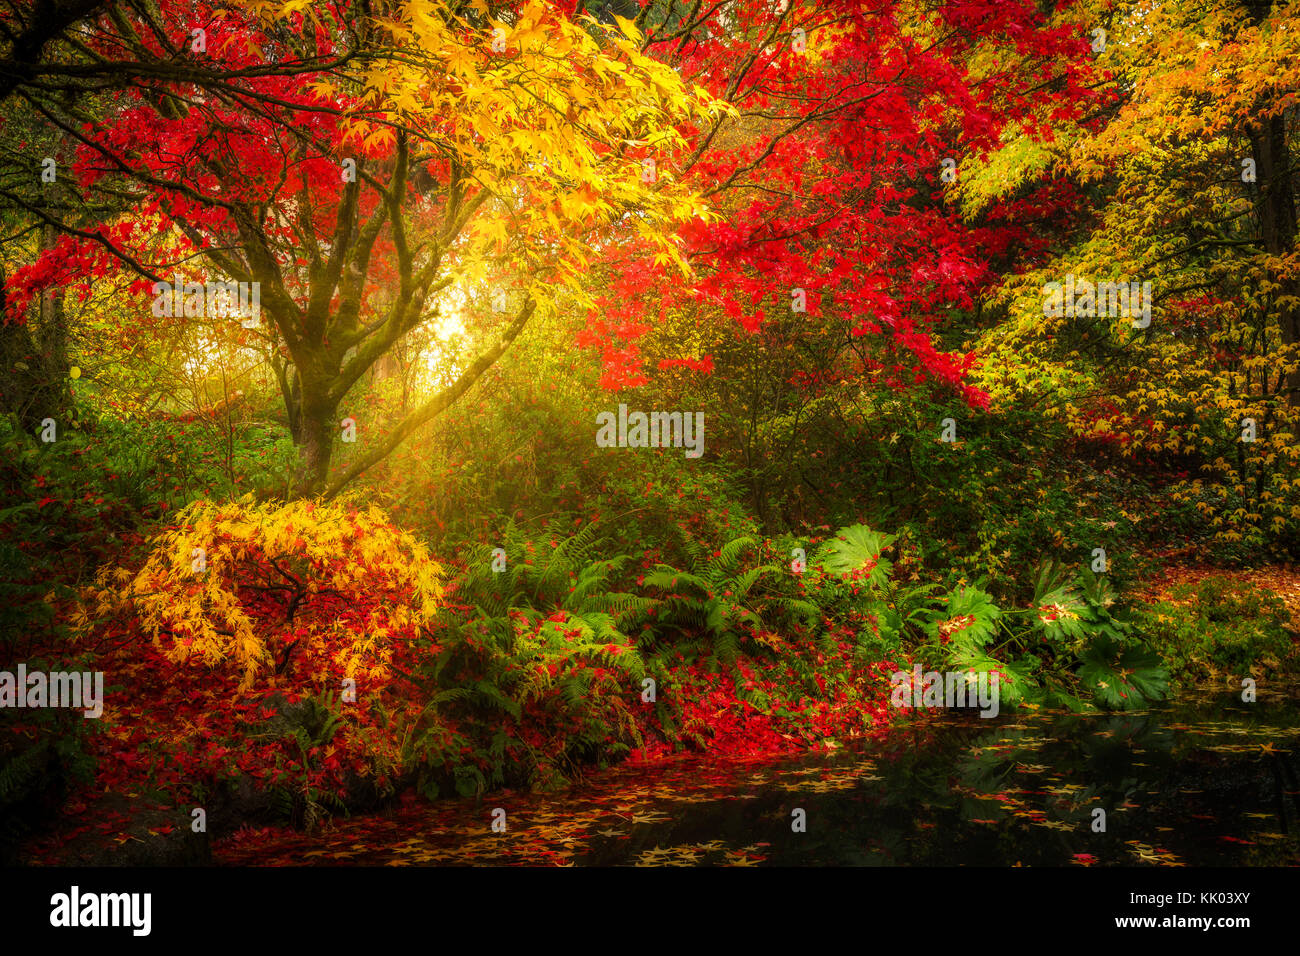 Paysage d'automne de rêve à Seattle à Washington Park Arboretum Botanical garden Banque D'Images